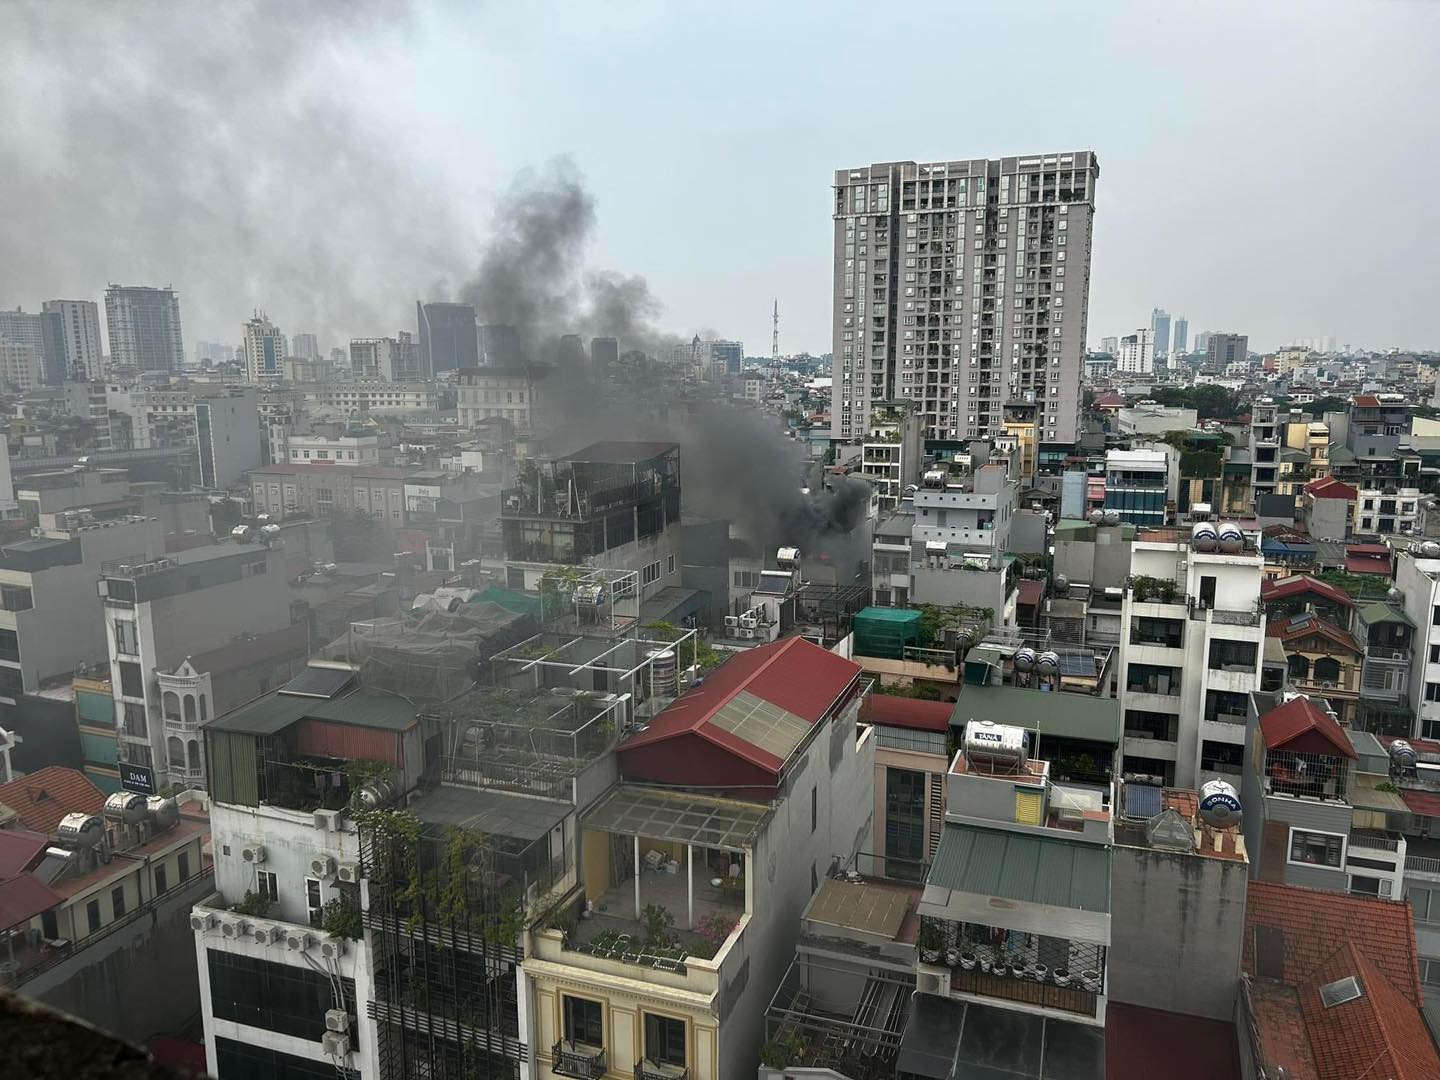 Cháy tầng 6 căn nhà ở Hà Nội, khói đen cuồn cuộn bốc cao khiến cả khu phố tháo chạy - ảnh 1